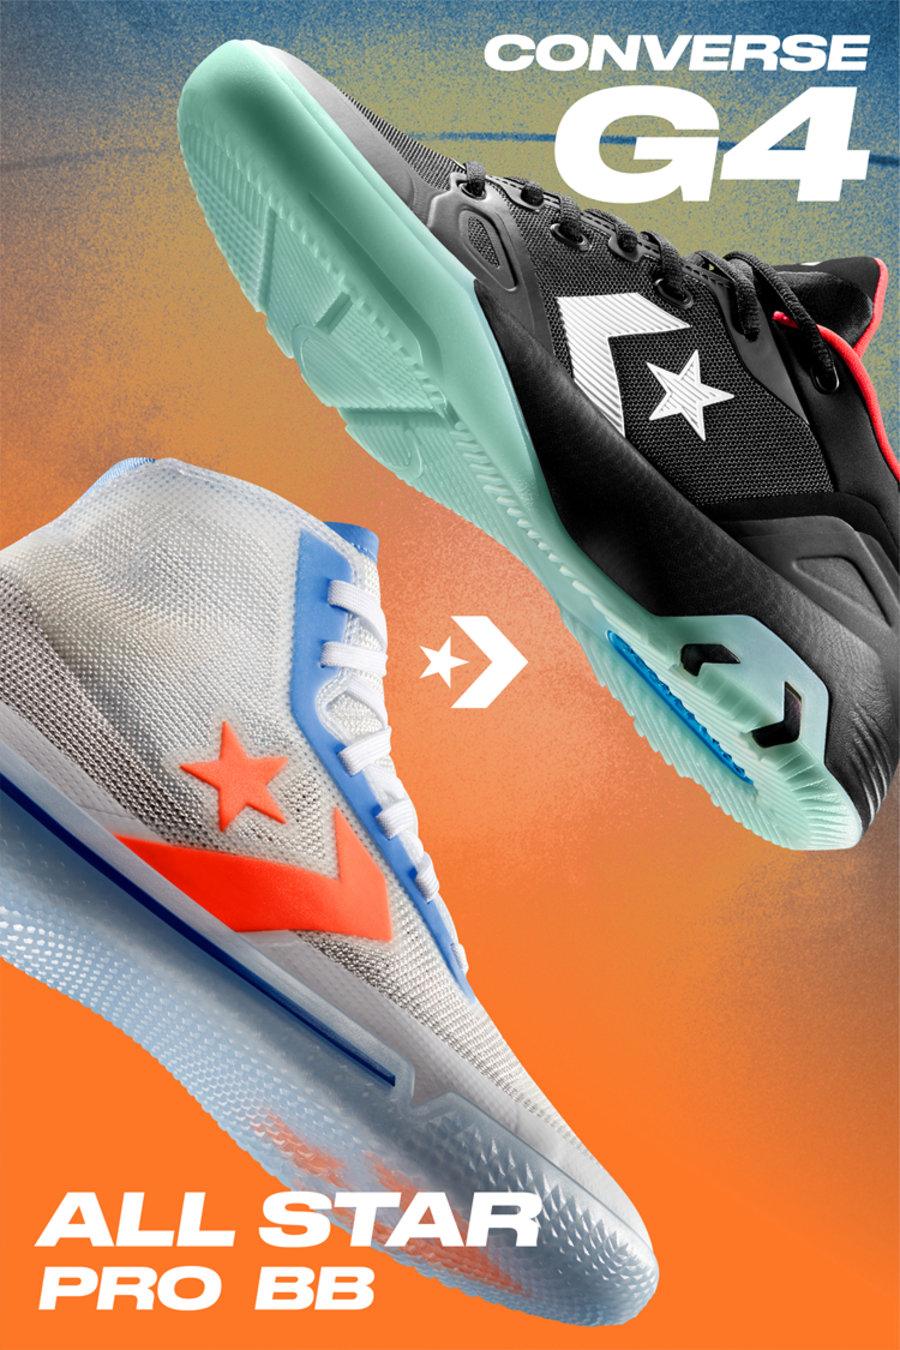 Converse,All Star Pro BB,G4  想买鞋的一定要看！匡威篮球鞋新配色登场！其中两款刚刚发售！